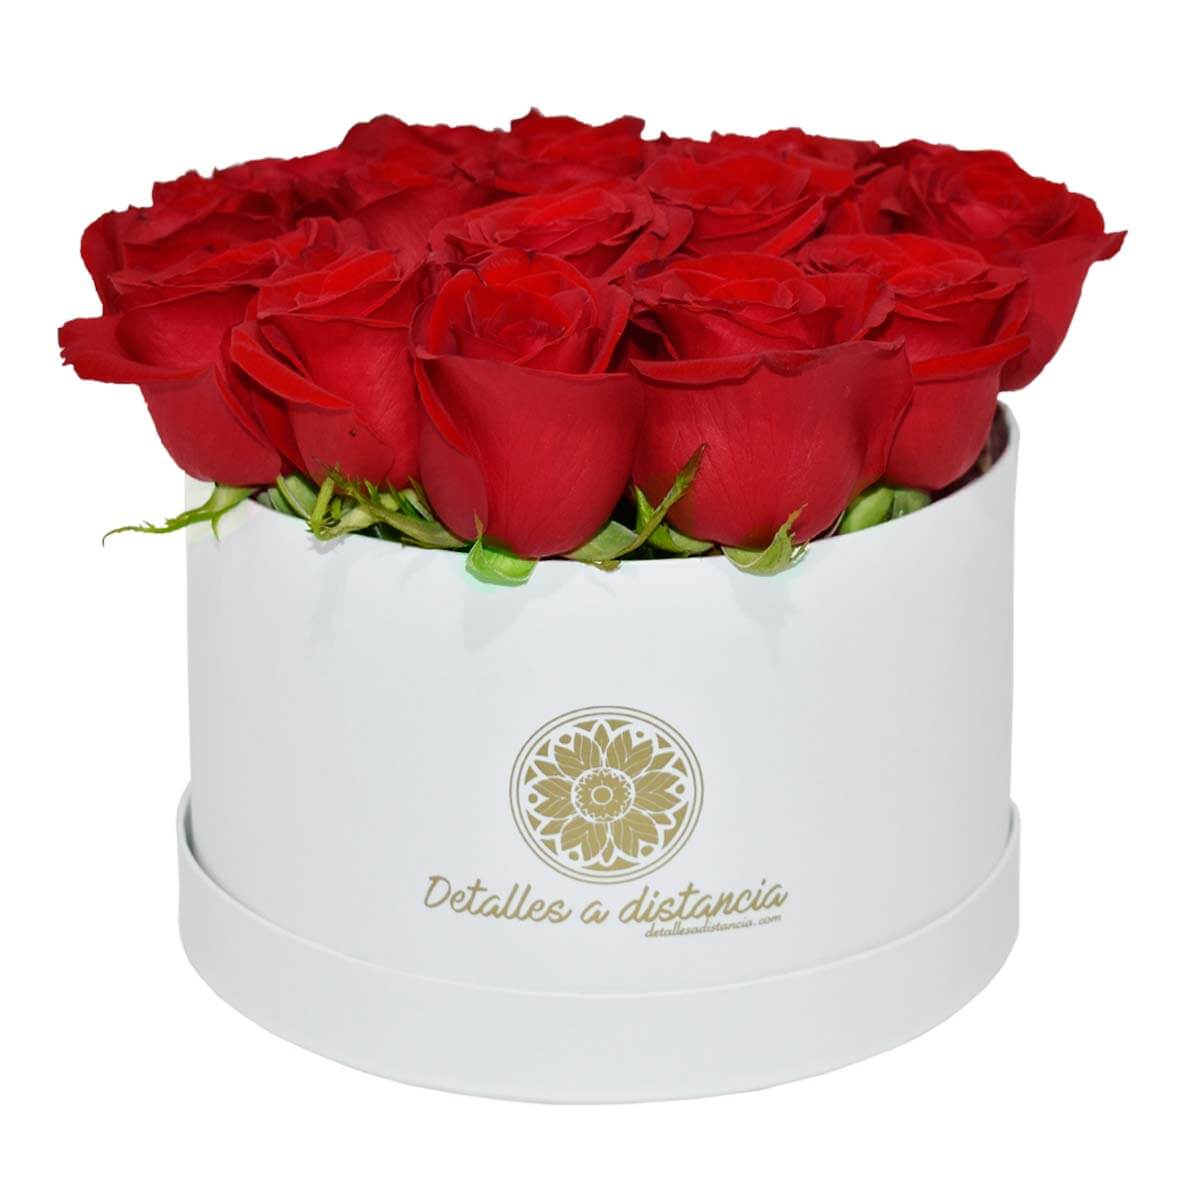 30 Rosas rojas en caja blanca - Detalles a distancia | Envía 30 rosas rojas